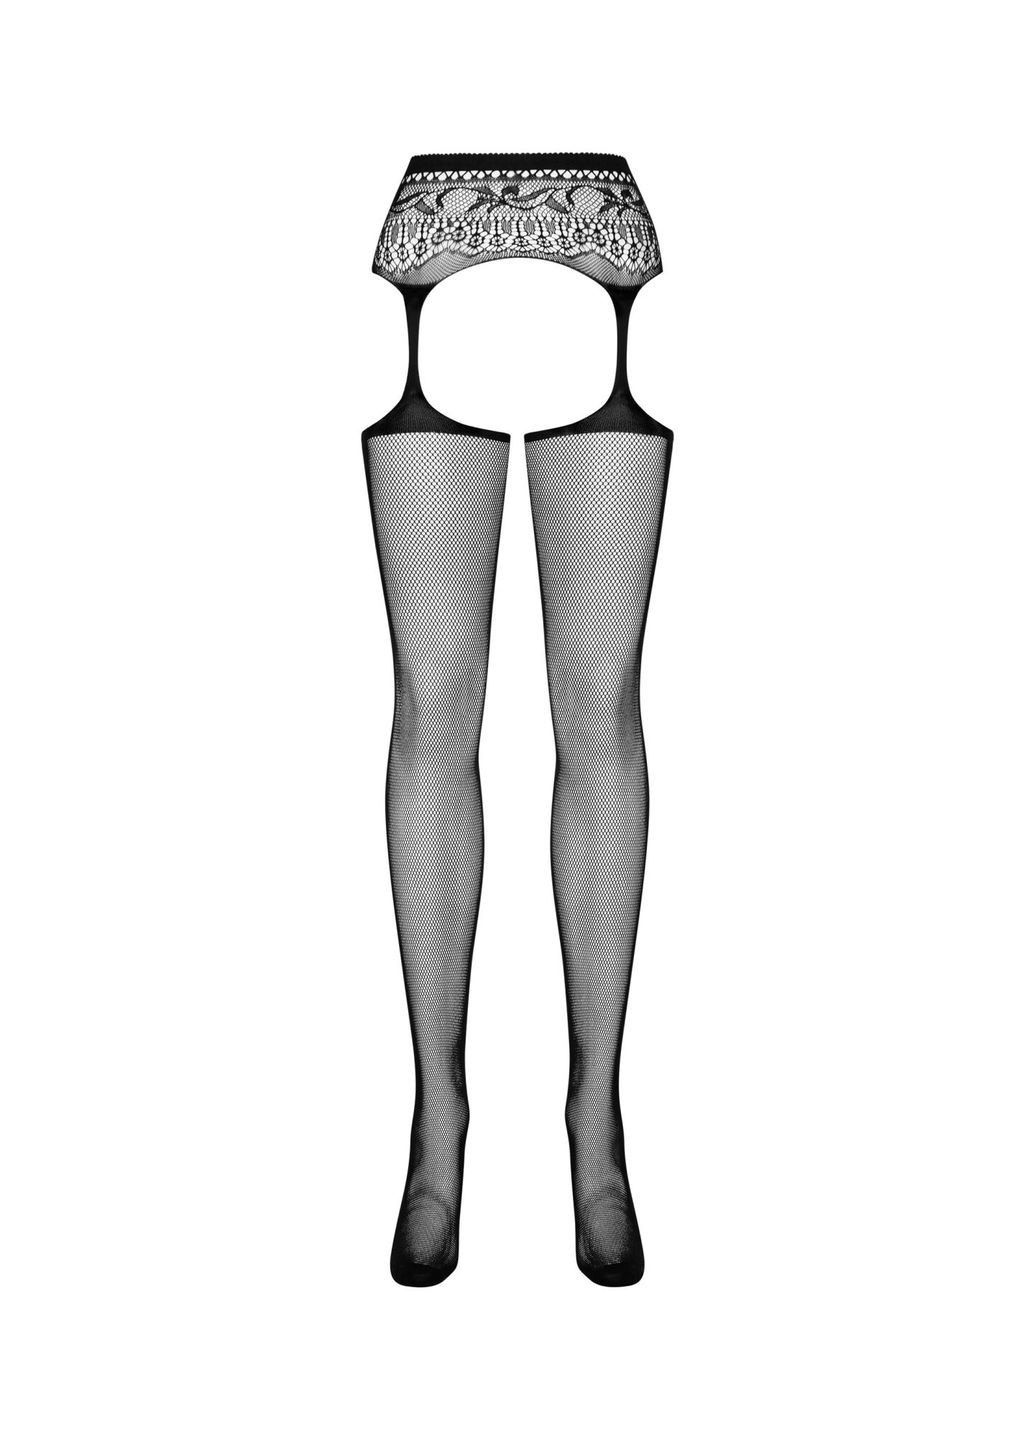 Сетчатые чулки-стокинги с кружевным поясом Garter stockings S307 черные XL/X - CherryLove Obsessive (282958992)